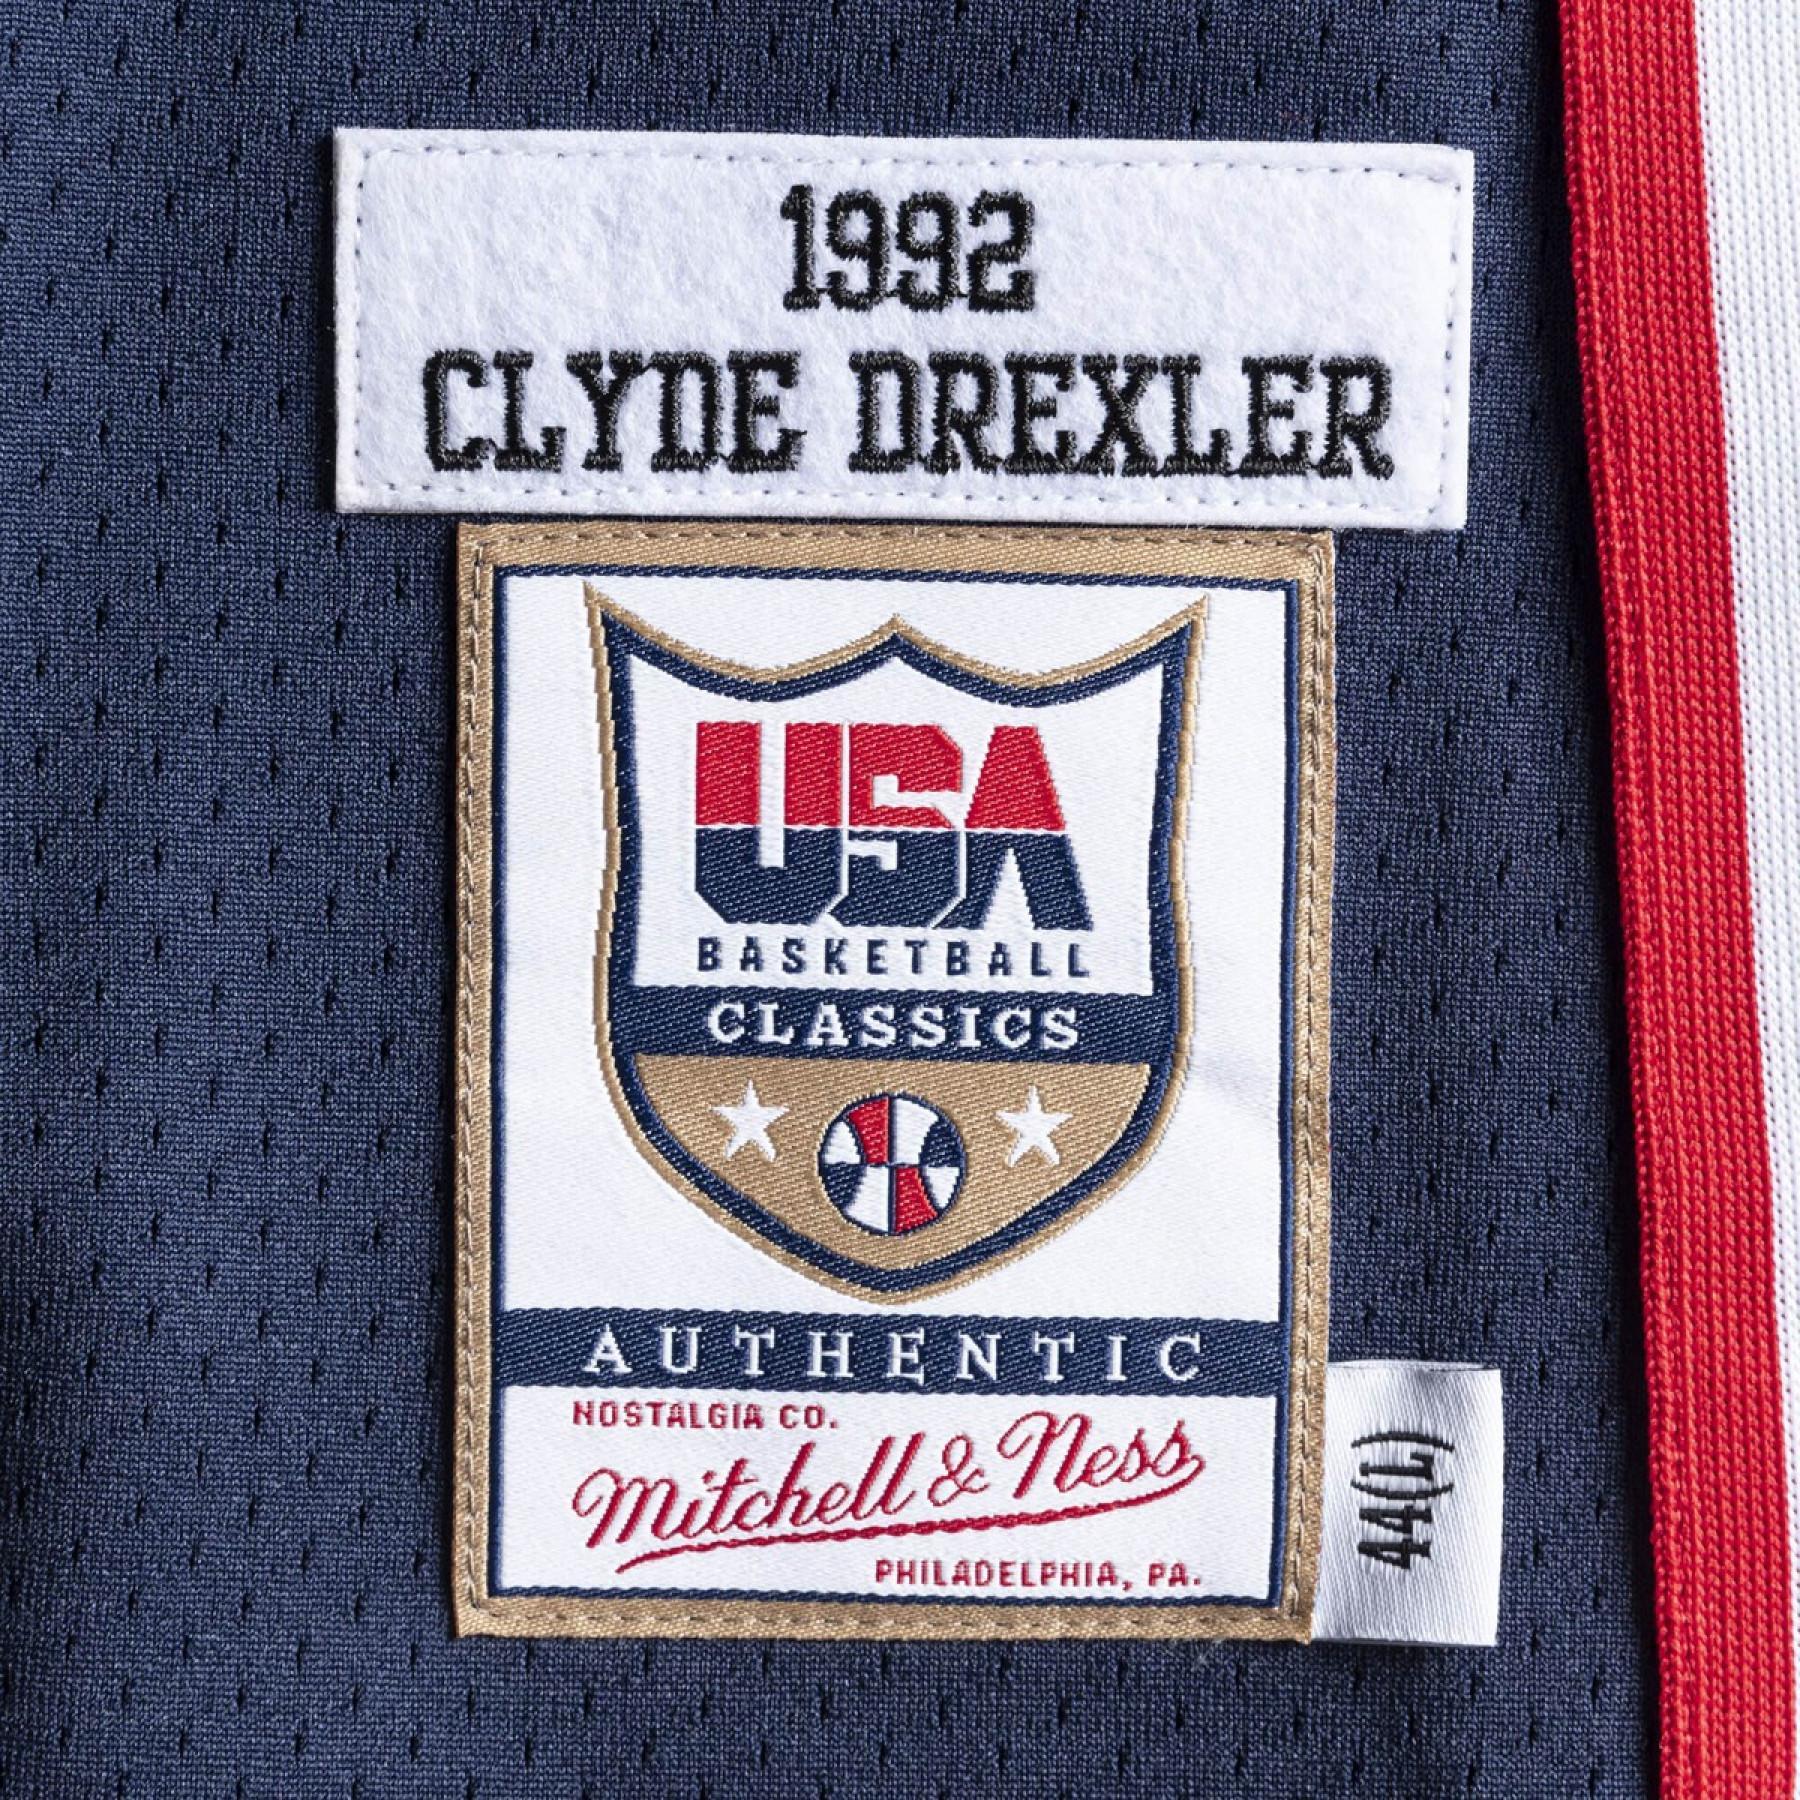 Maillot authentique Team USA nba Clyde Drexler